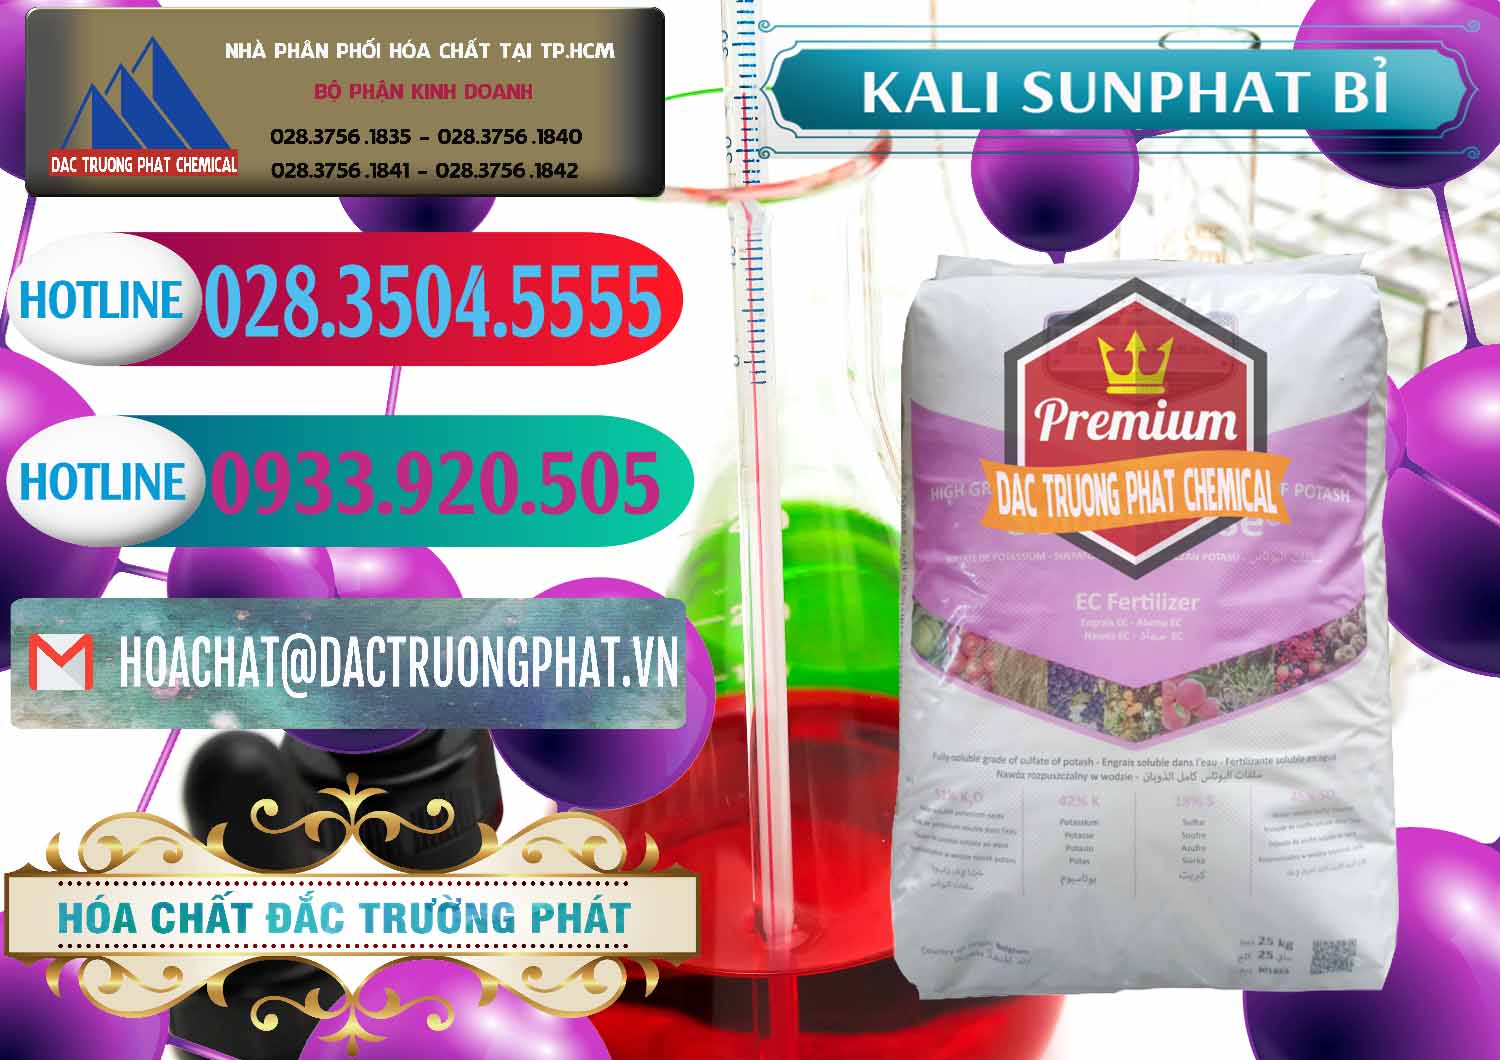 Chuyên bán ( phân phối ) Kali Sunphat – K2SO4 Bỉ Belgium - 0406 - Nơi chuyên cung cấp - kinh doanh hóa chất tại TP.HCM - truongphat.vn